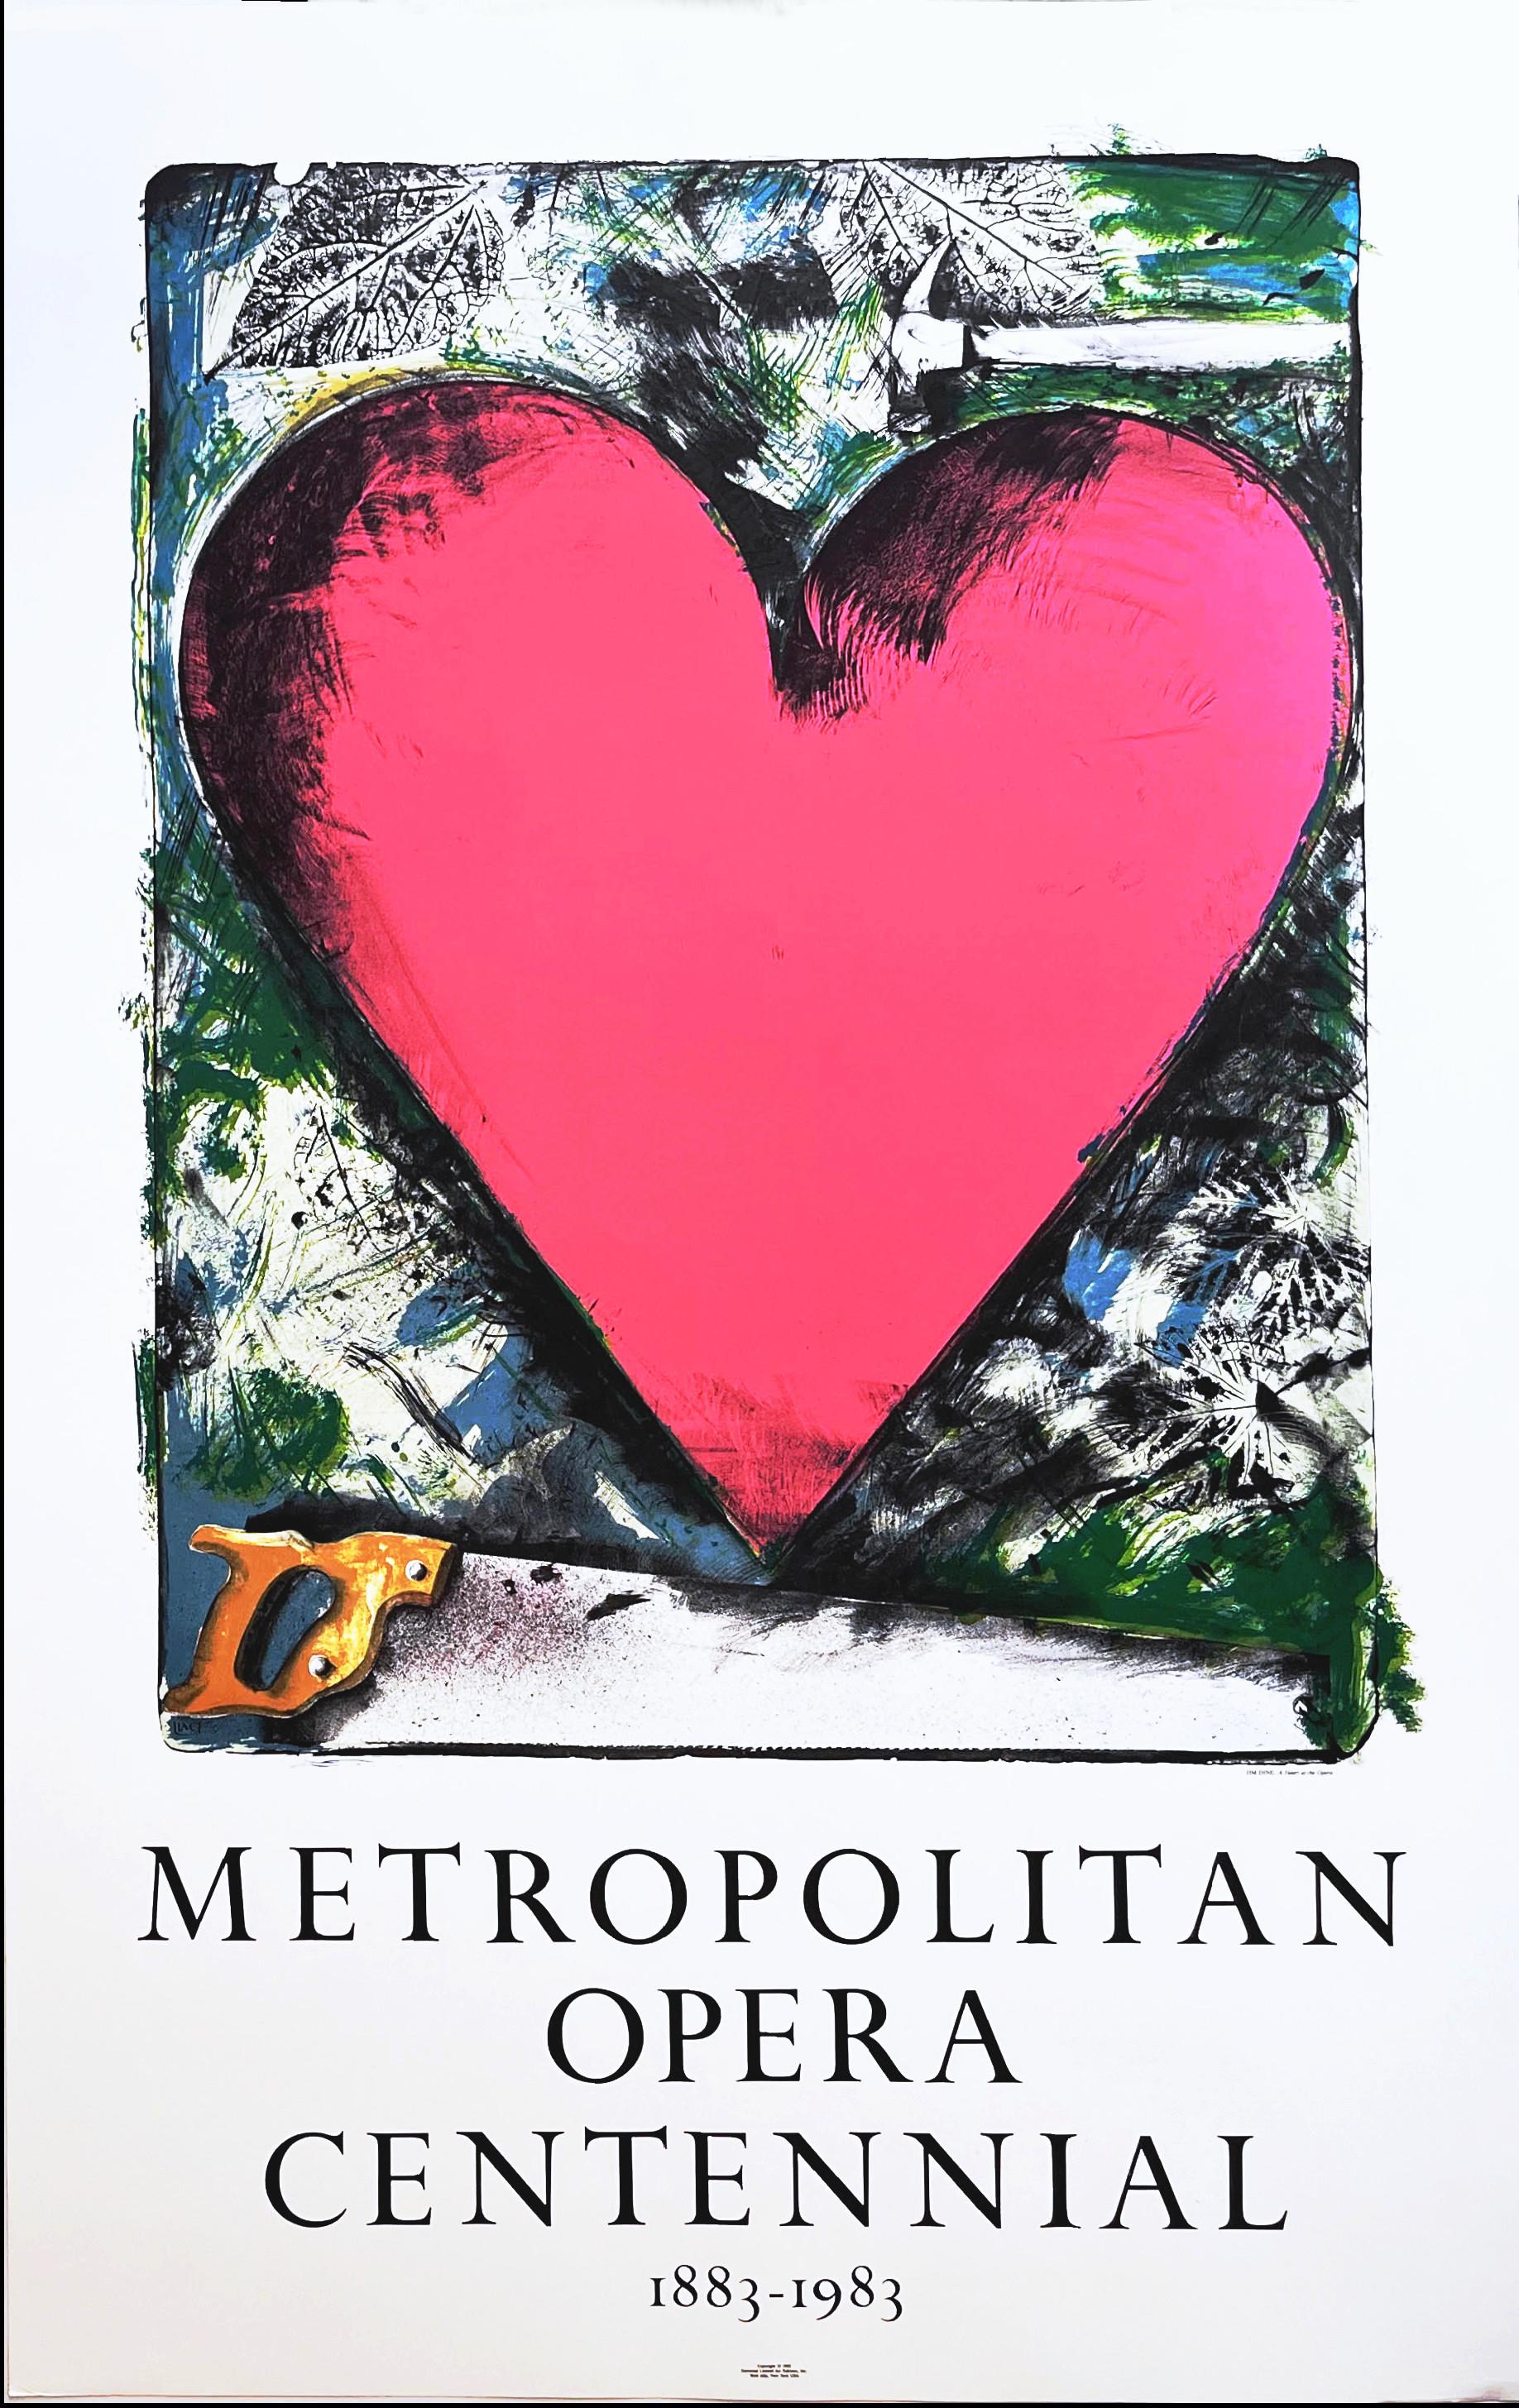 Jim Dine Figurative Print - Pink Heart: Metropolitan Opera Centennial 1883-1983 lithographic Pop Art poster